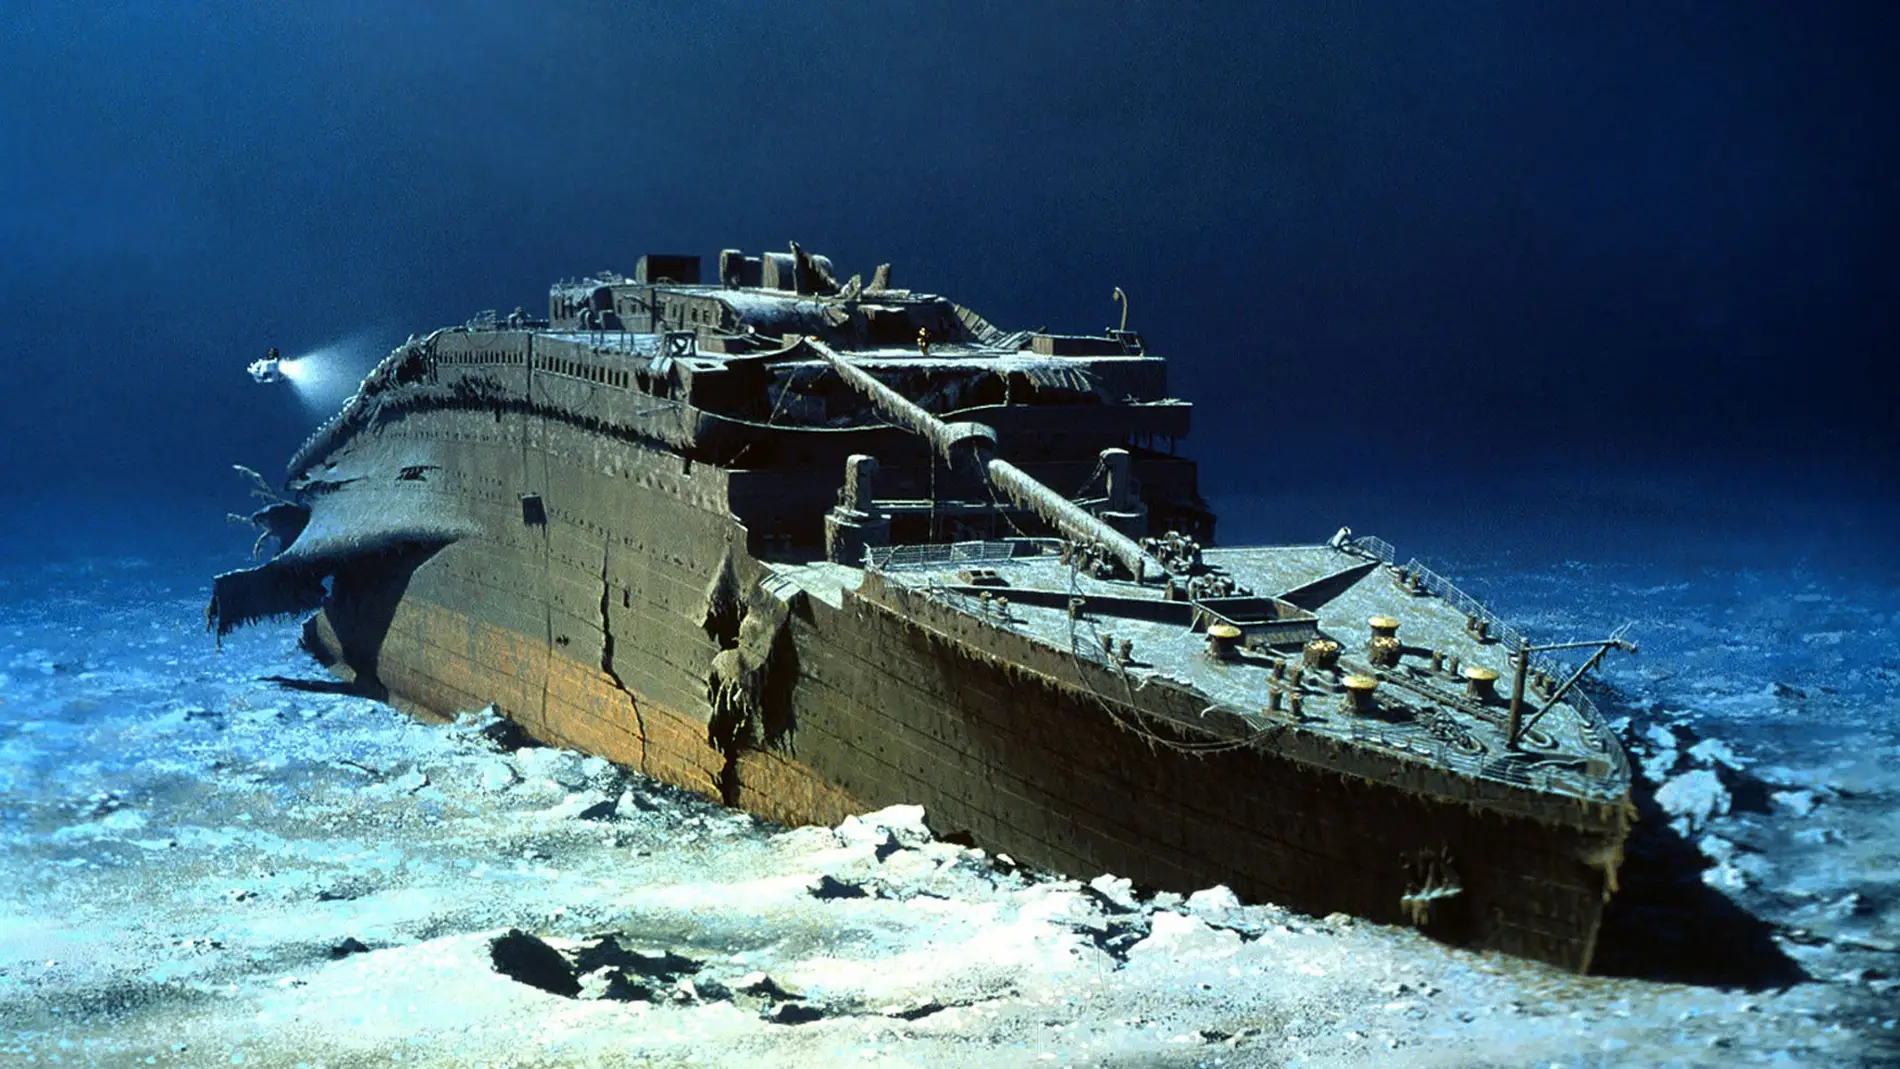 Publican imágenes de los restos del Titanic 25 años después del estreno de  la película